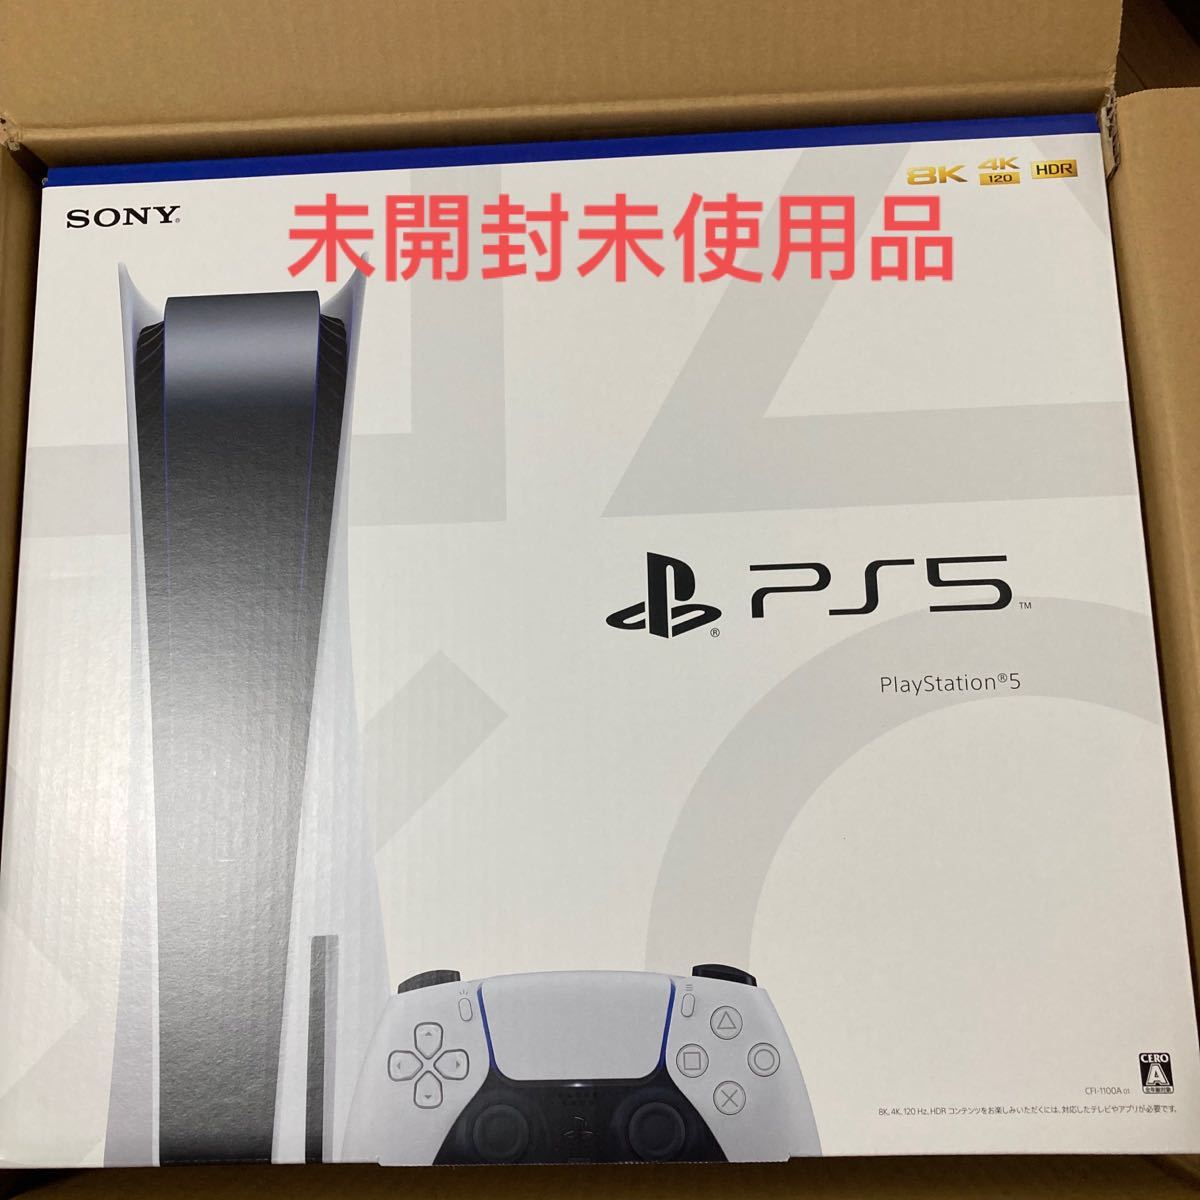 最新 PlayStation 新品未開封未使用です。 CFI-1100A01 5 - 本体 - reachahand.org